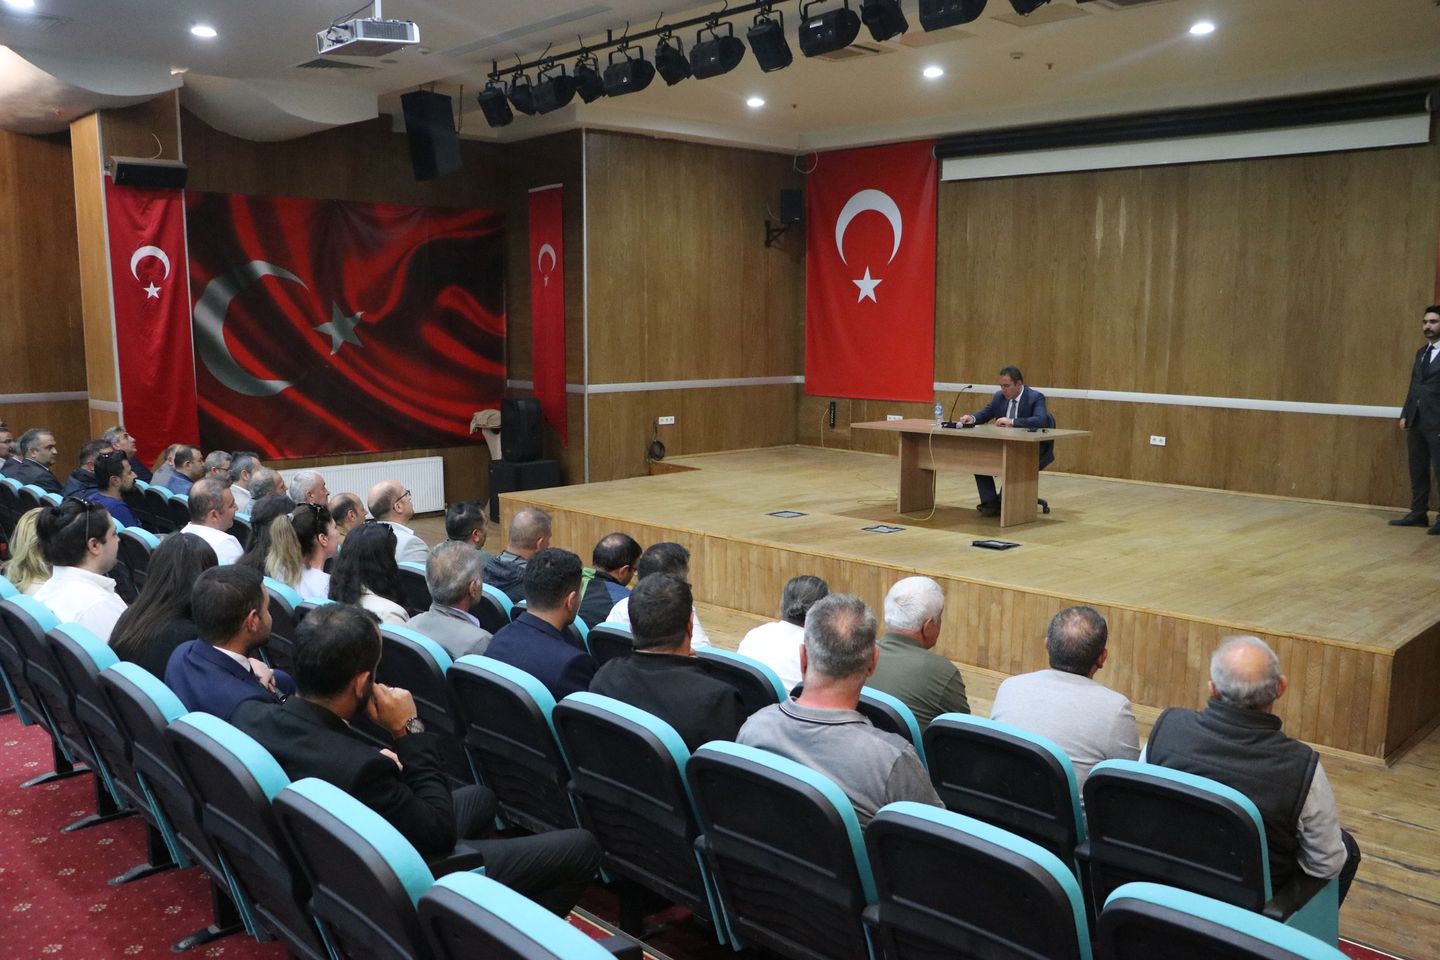 Kars Belediye Başkanı Prof. Dr. Ötüken Senger, Türk Eğitim-Sen Kars Şube Başkanı Ozan Ağadedeoğlu ve Sendika Temsilcilerini Ağırladı